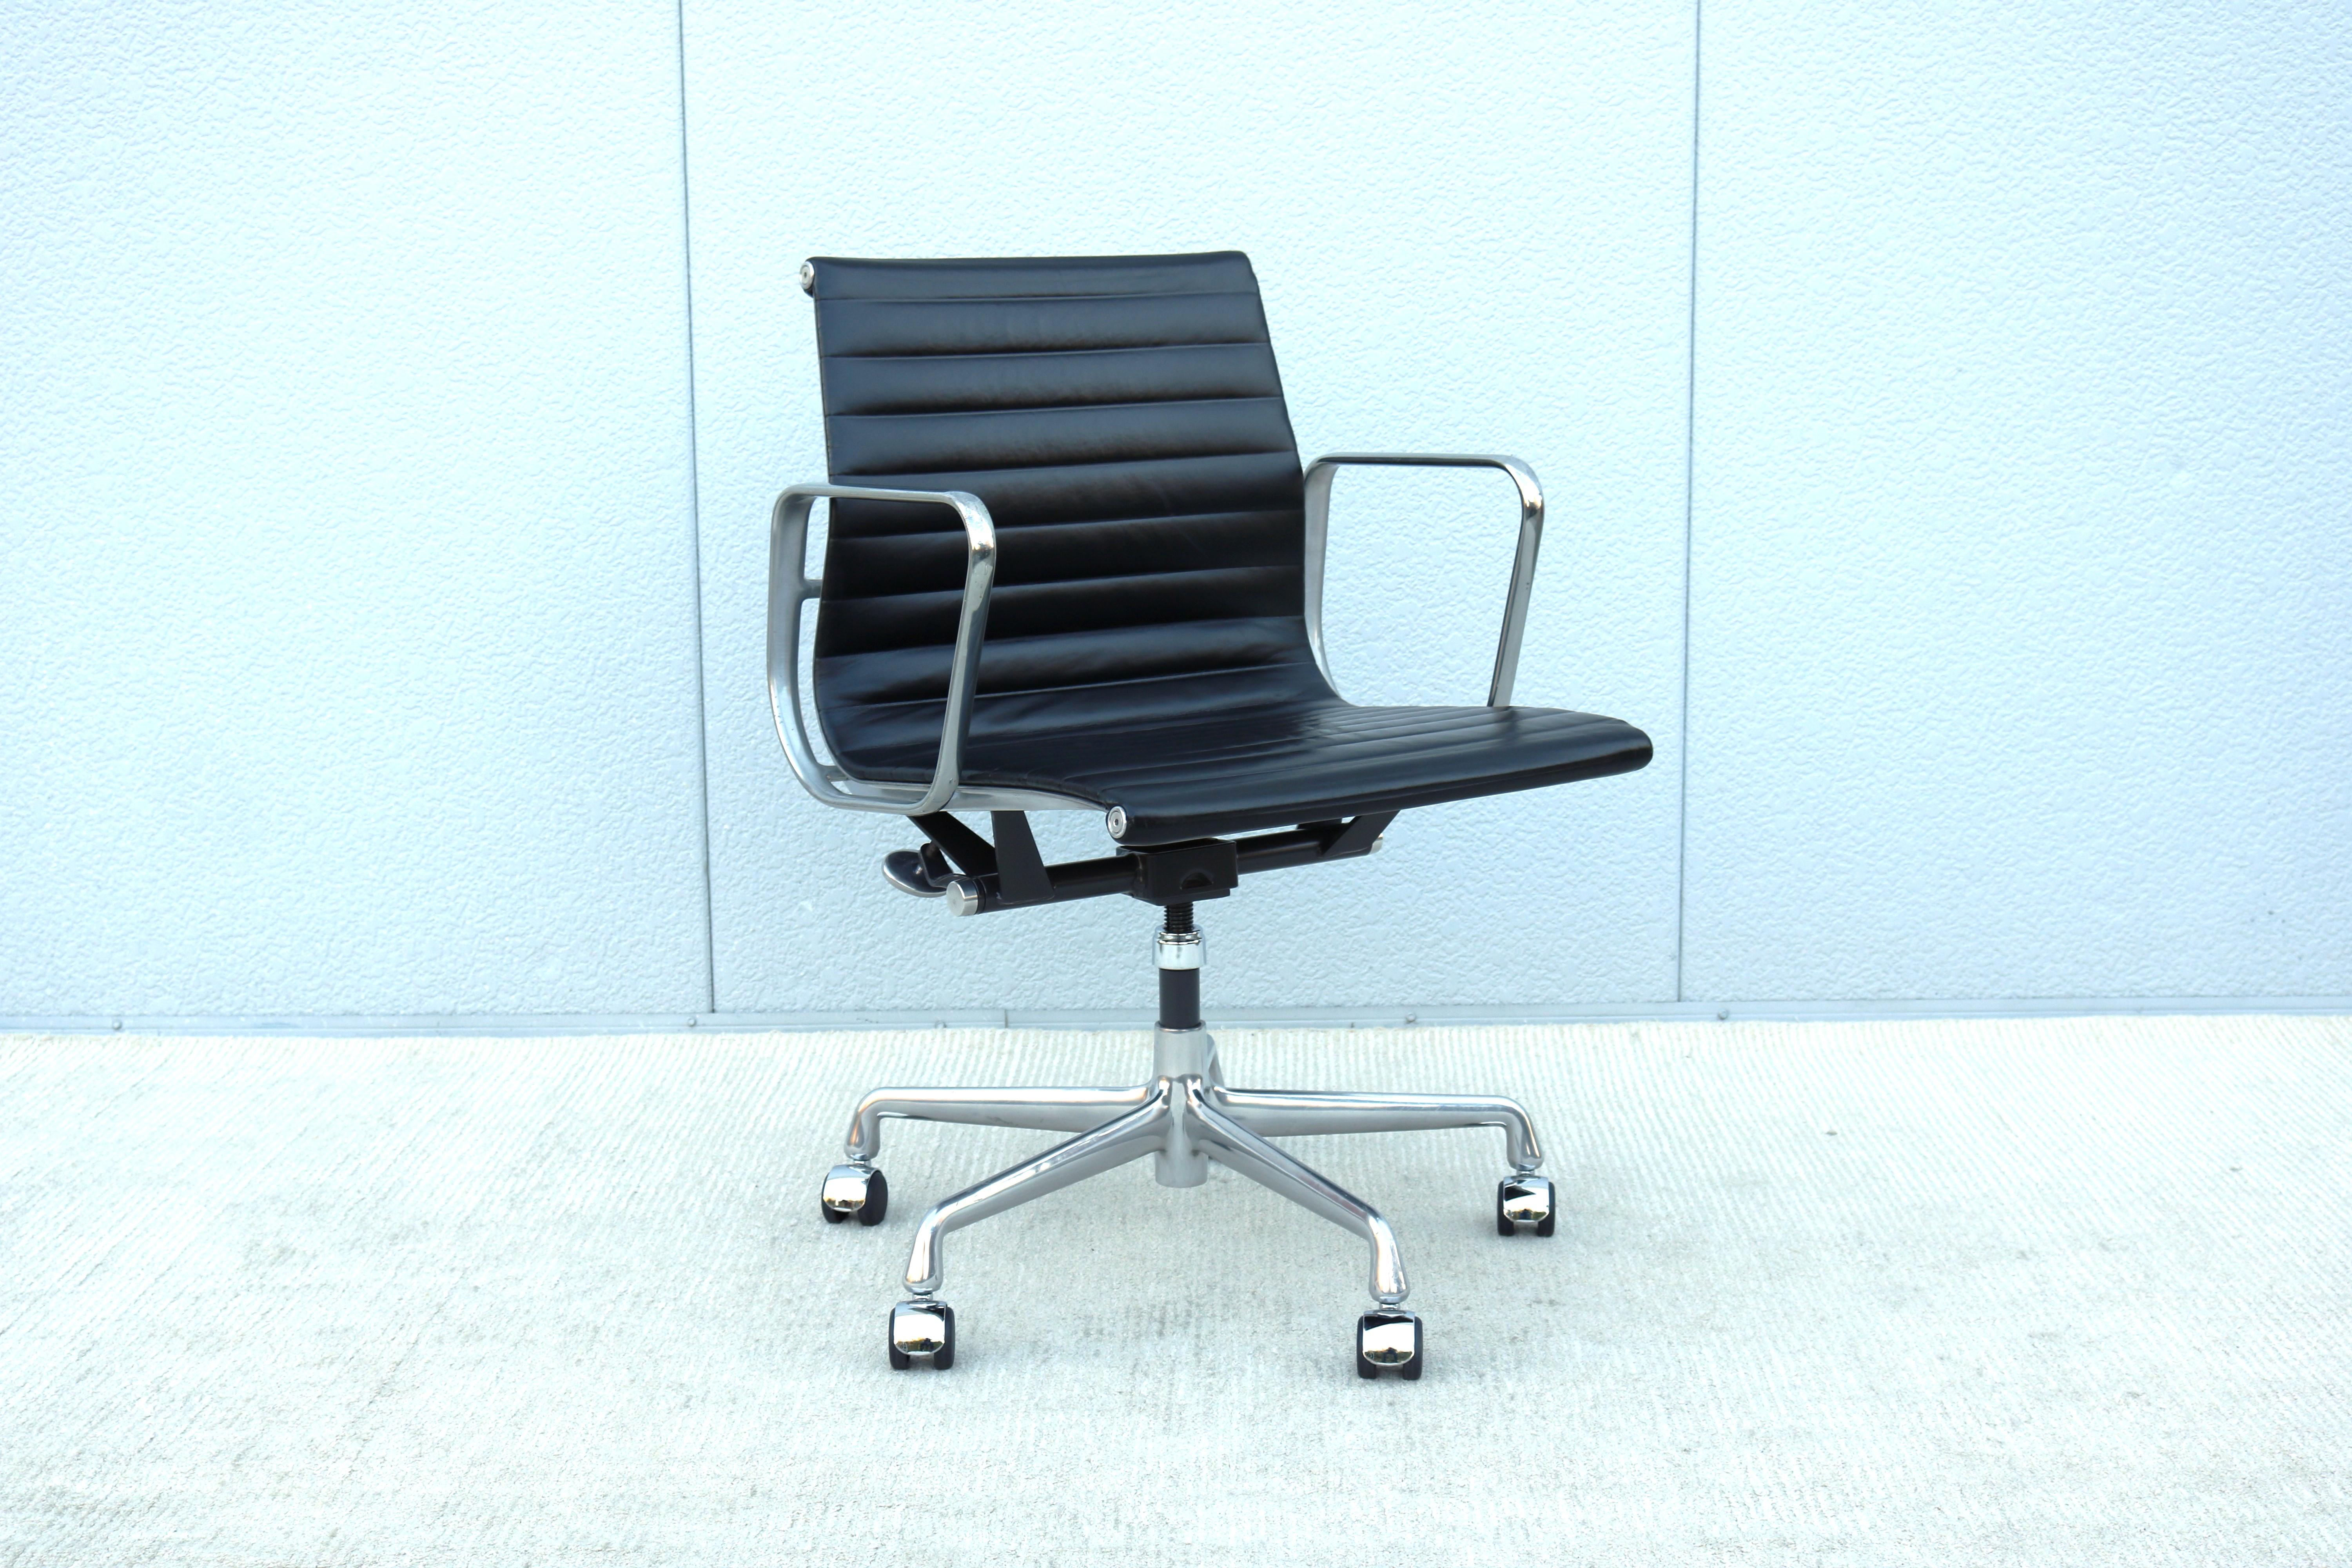 Atemberaubende authentische Mid-Century Modern Eames Aluminium Gruppe Management Stuhl.
Ein zeitloses Design, klassisch und modern, mit innovativen Komfortmerkmalen.
Einer der beliebtesten Stühle von Herman Miller wurde 1958 von Charles und Ray